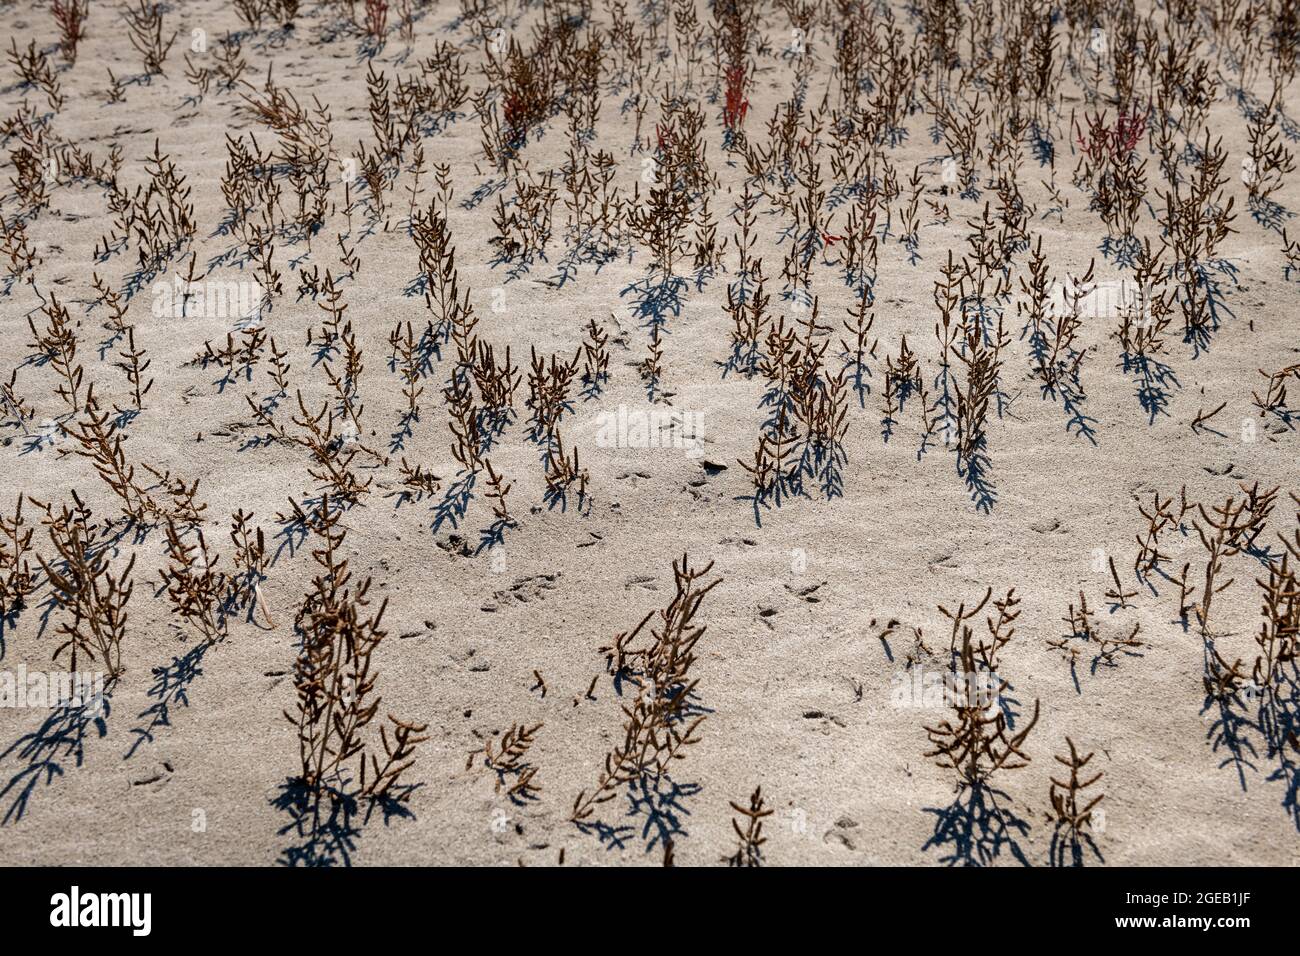 Plantes mourant ou mortes sur des terres arides provoqué par le changement climatique. Banque D'Images